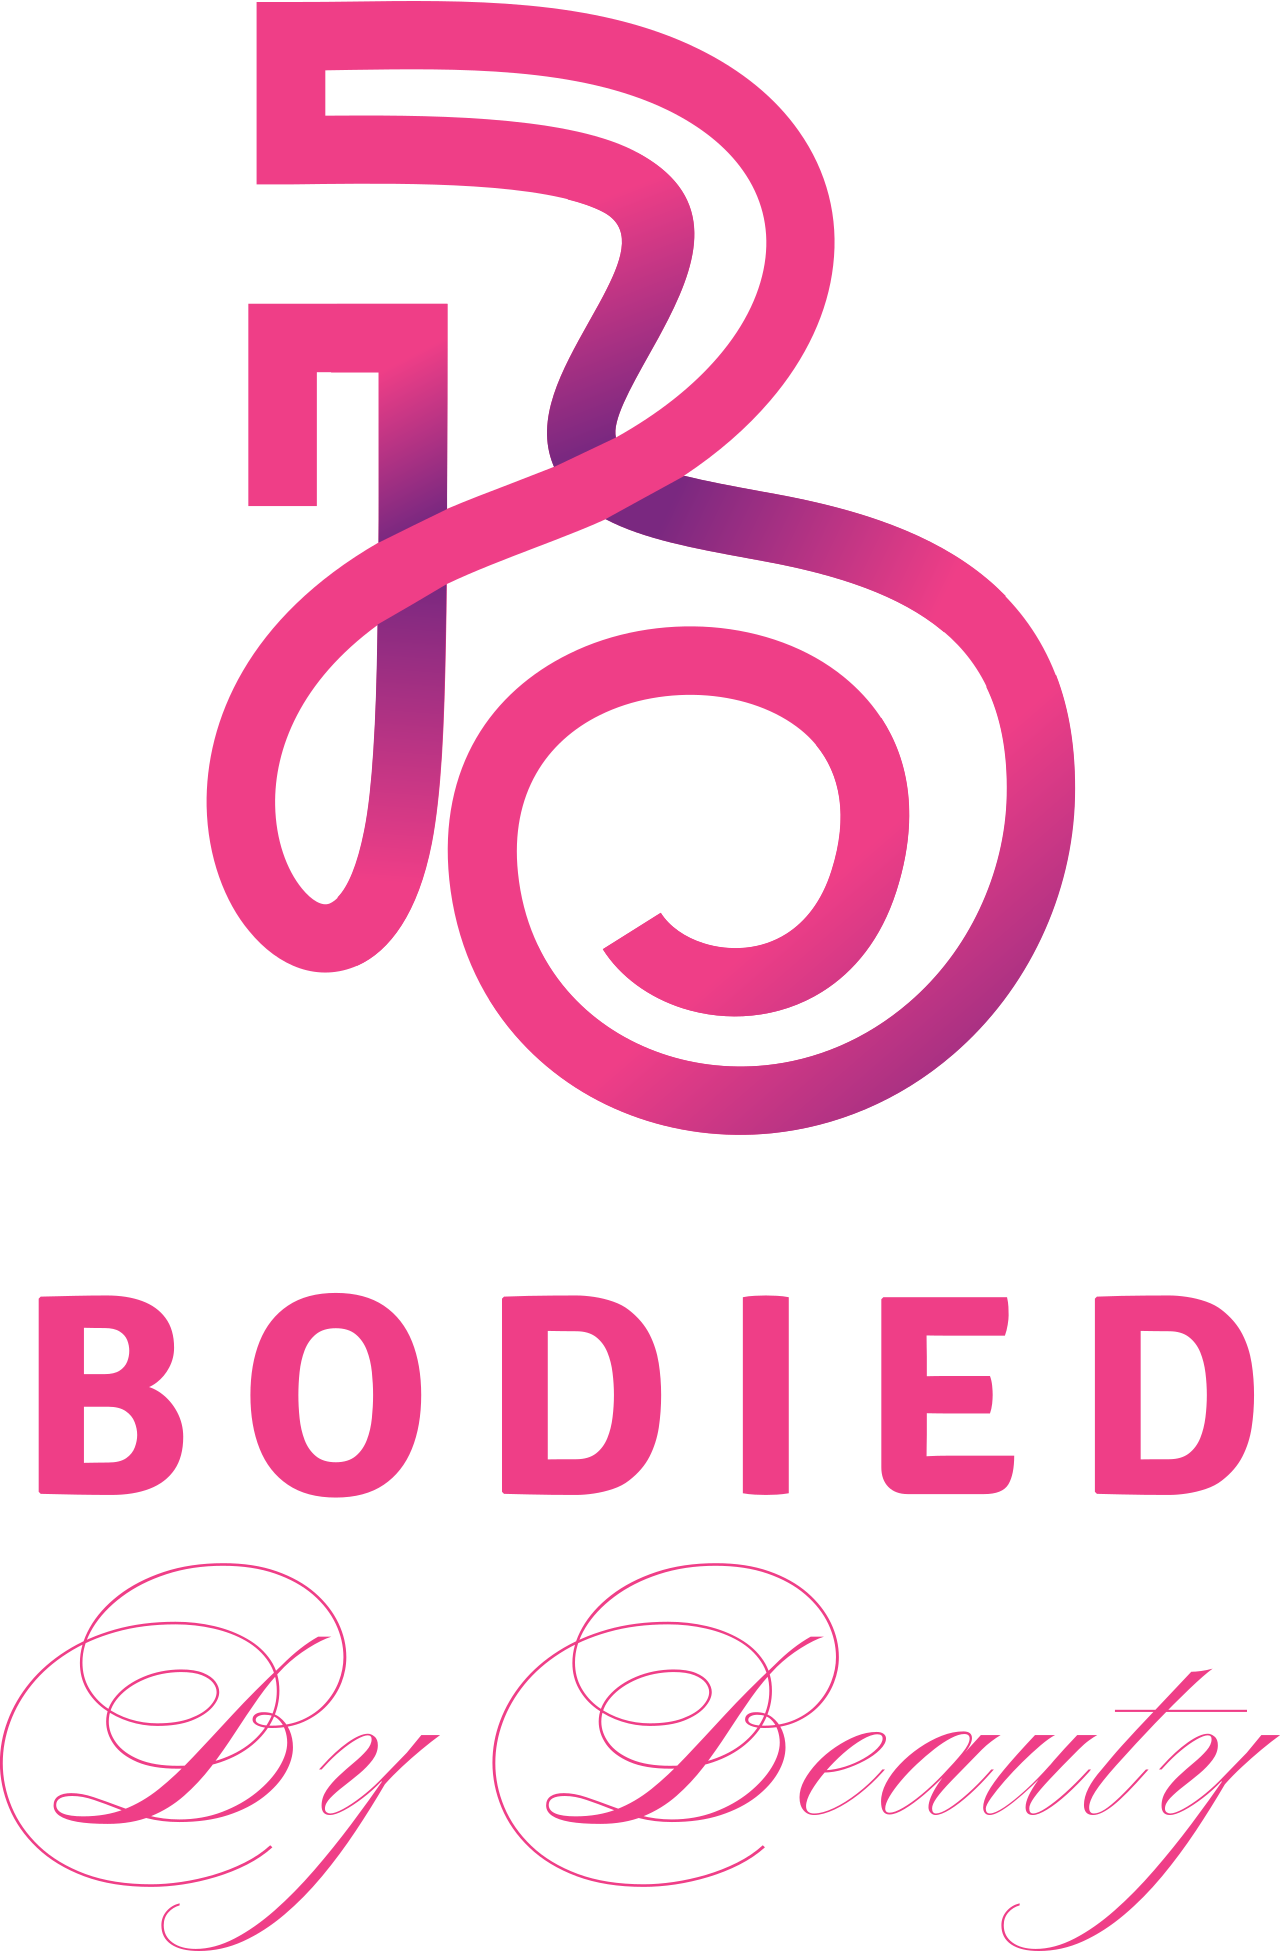 BODIED's logo